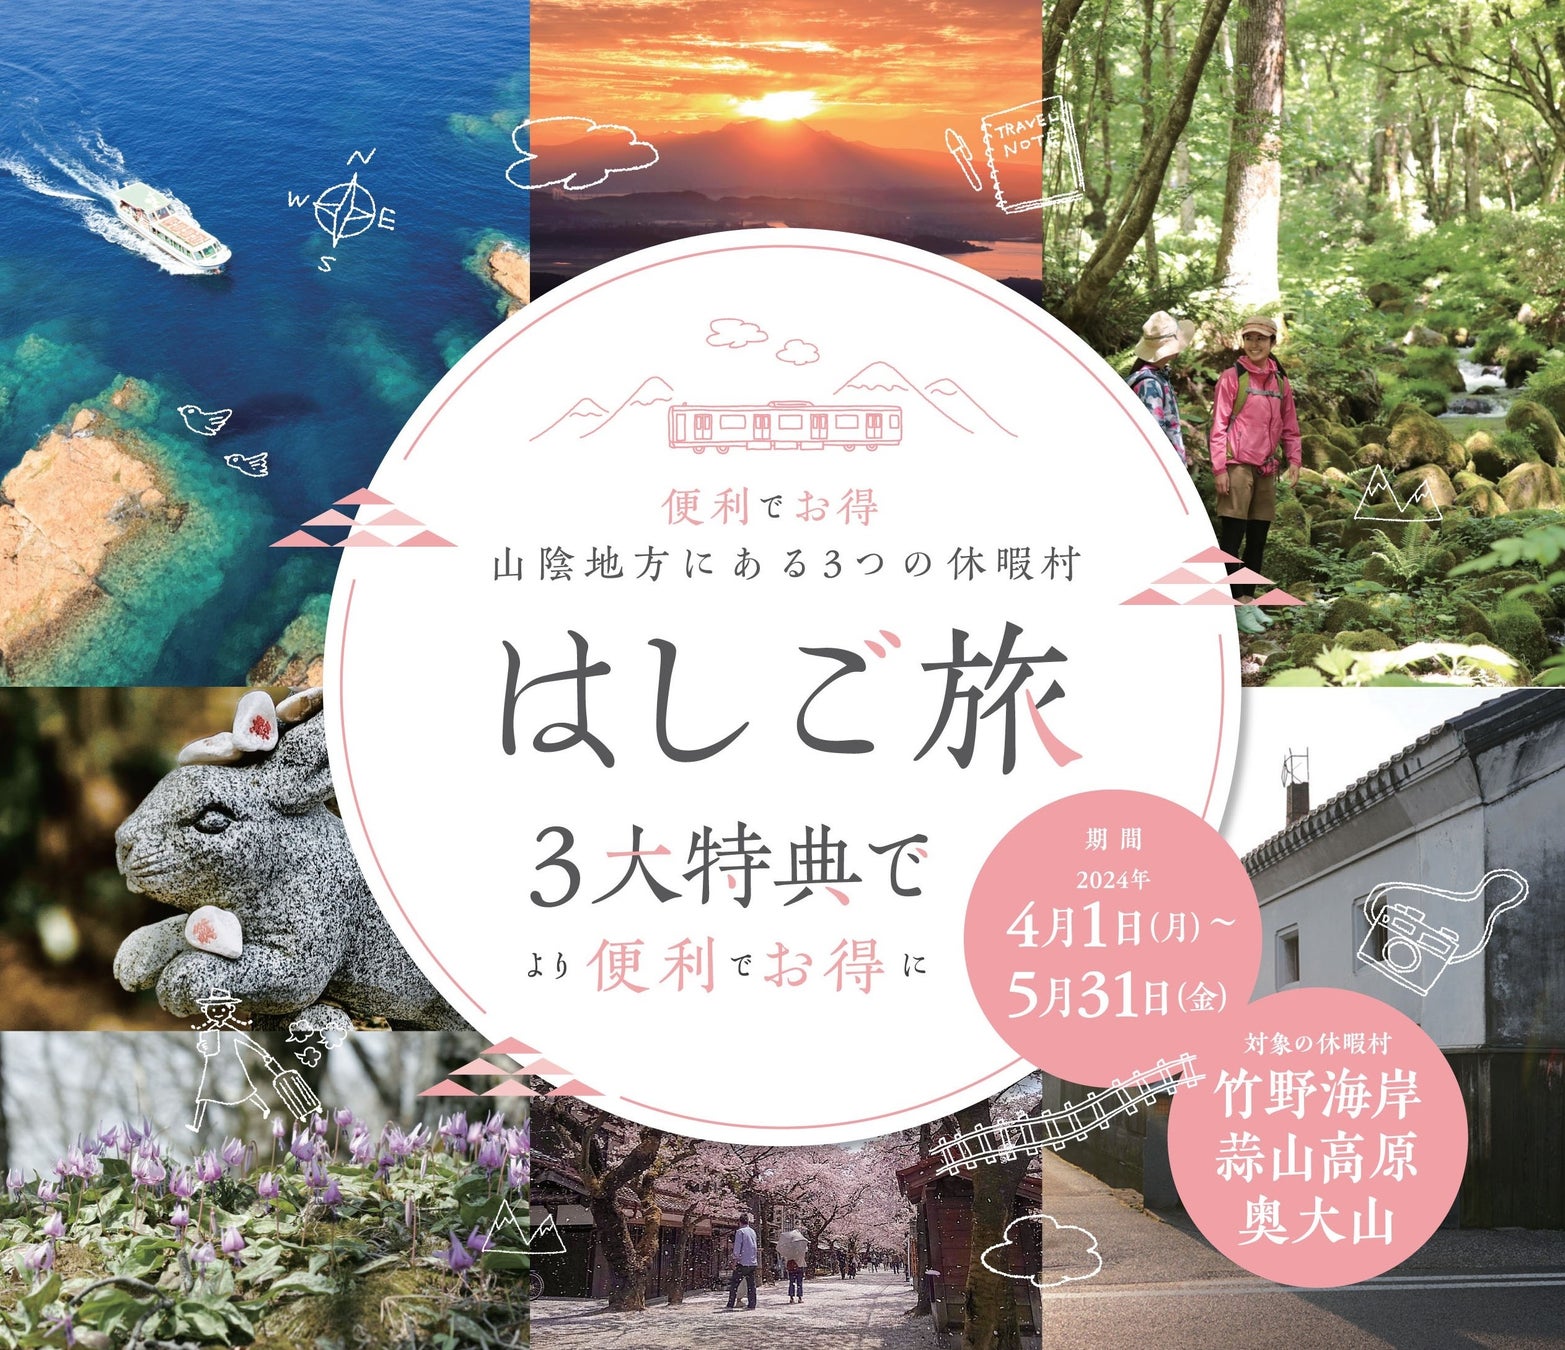 ダイナースクラブ 日本橋キャンペーンを開催